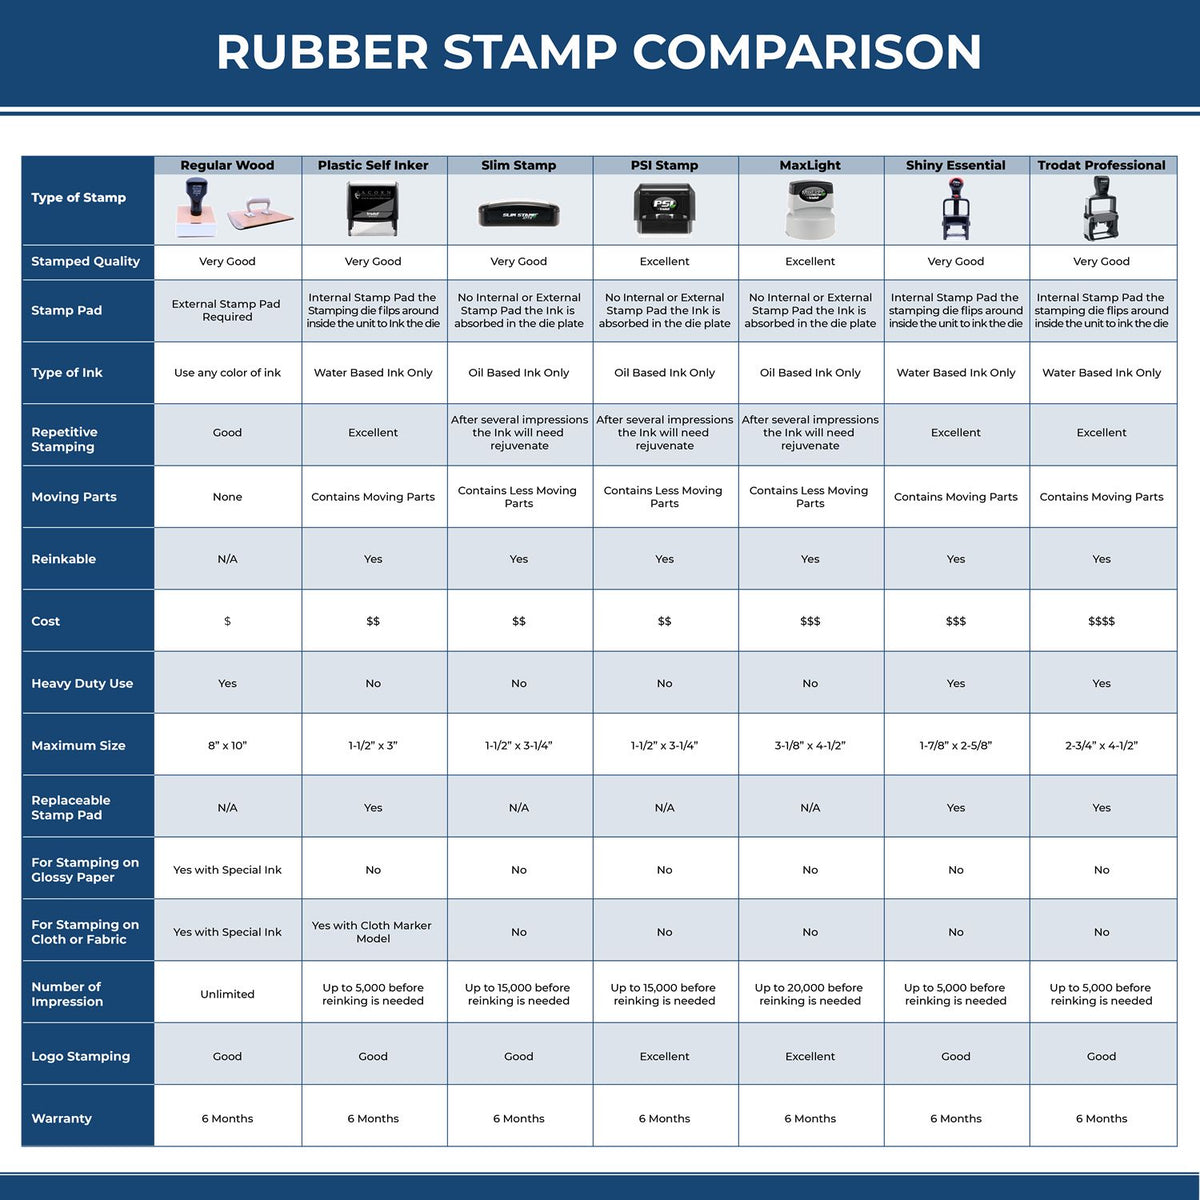 Large Credito Rubber Stamp 5531R Rubber Stamp Comparison